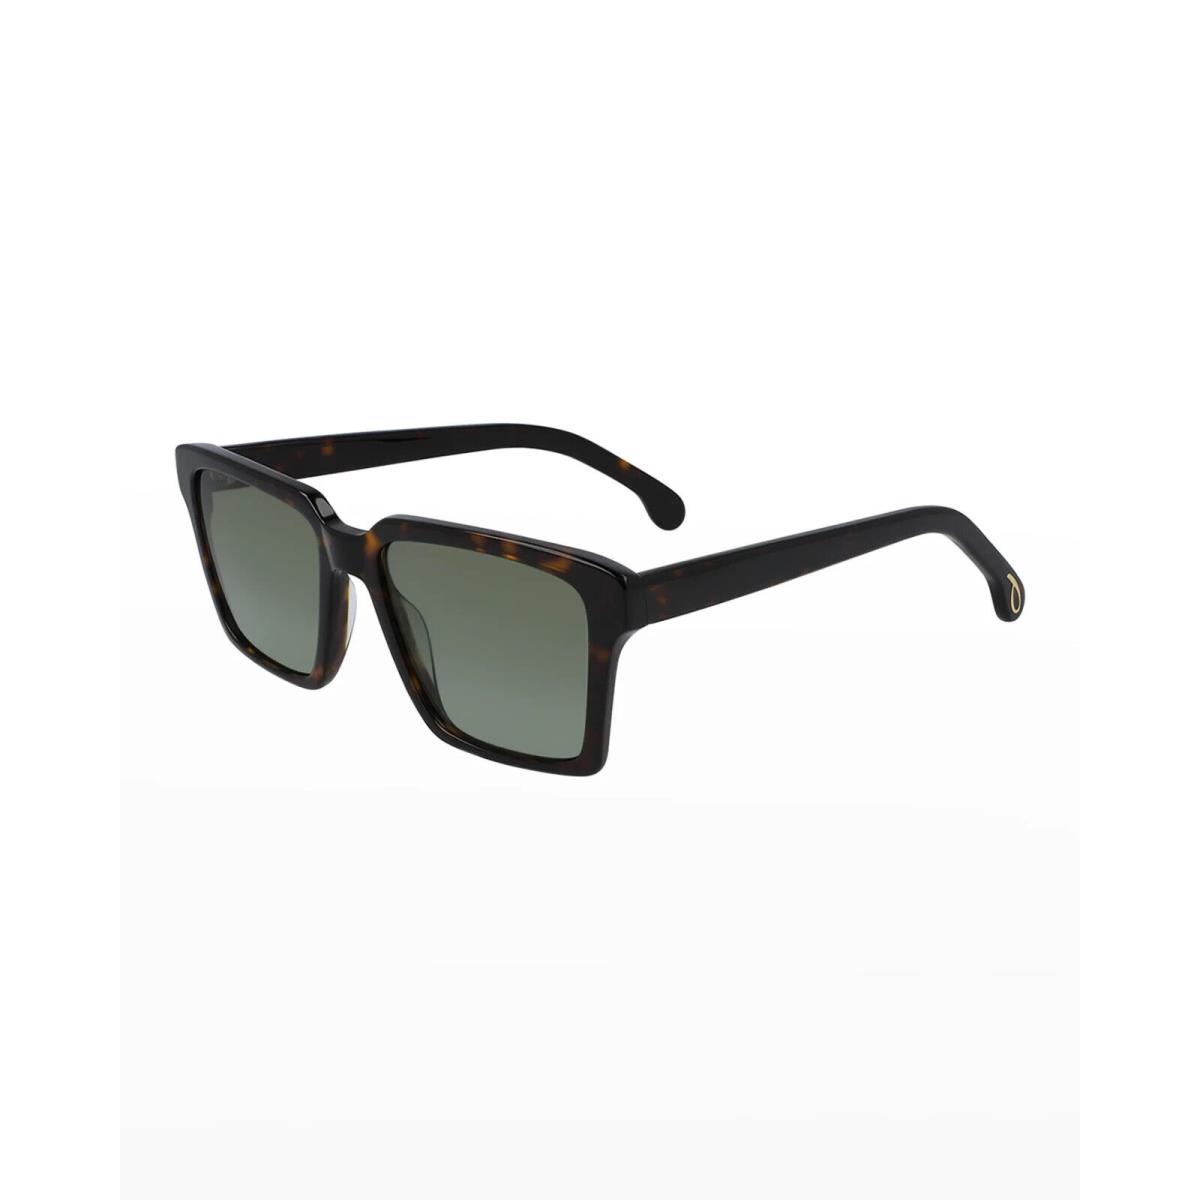 Paul Smith Sunglasses Austin 4 Colors Retail 53-18-145